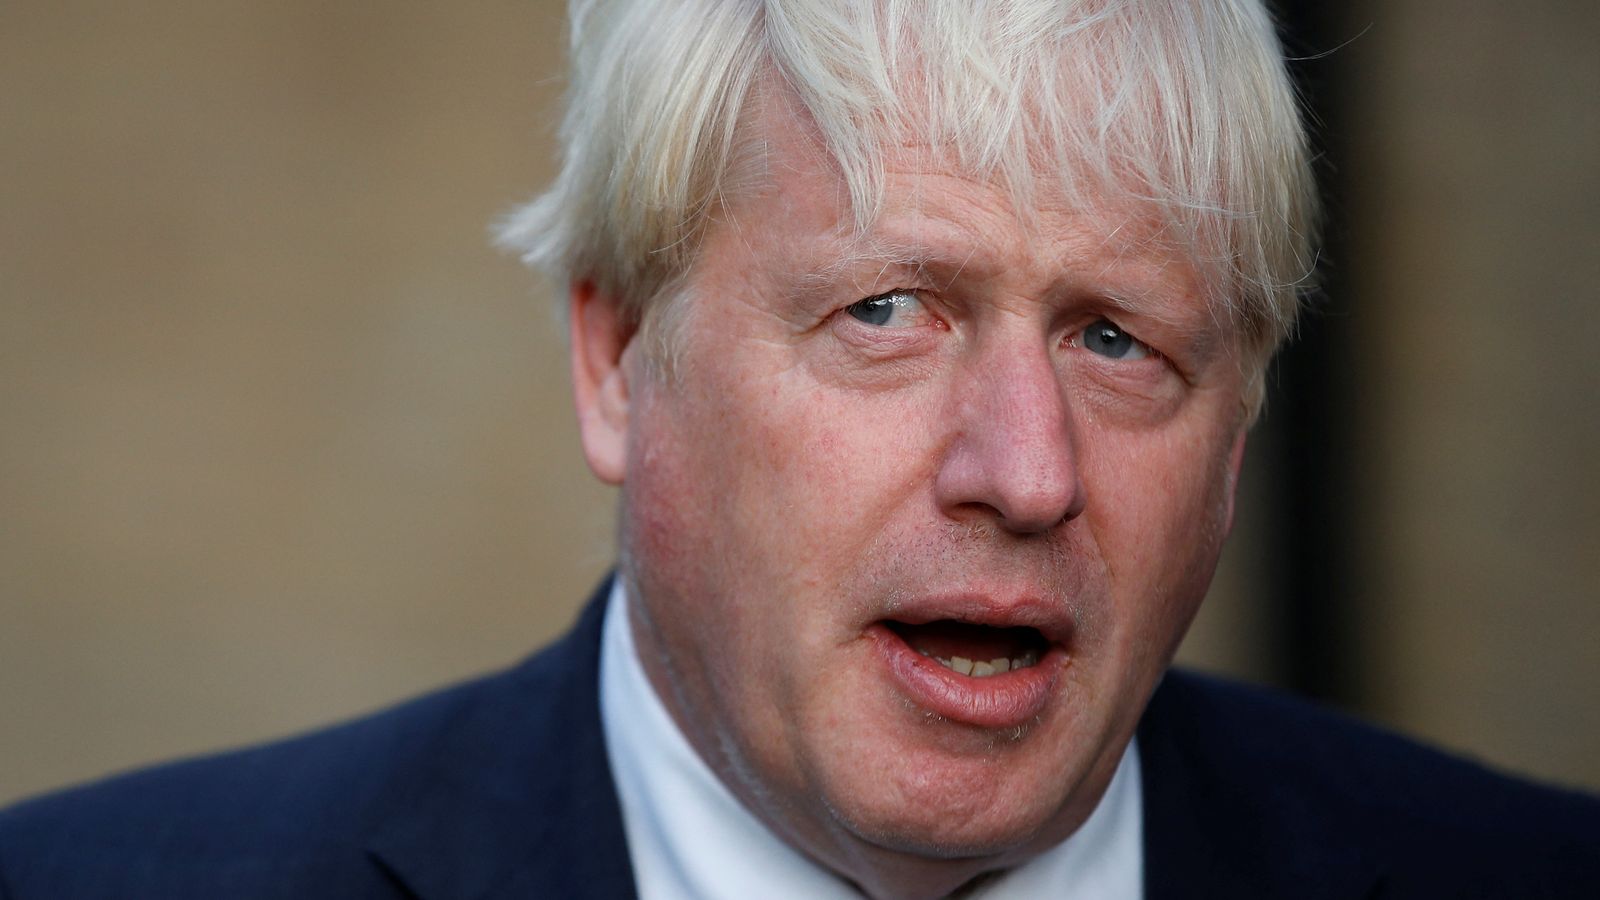 Buruh melaporkan Boris Johnson ke pengawas standar atas ‘rawa kebatilan’ yang melanda mantan PM |  Berita politik